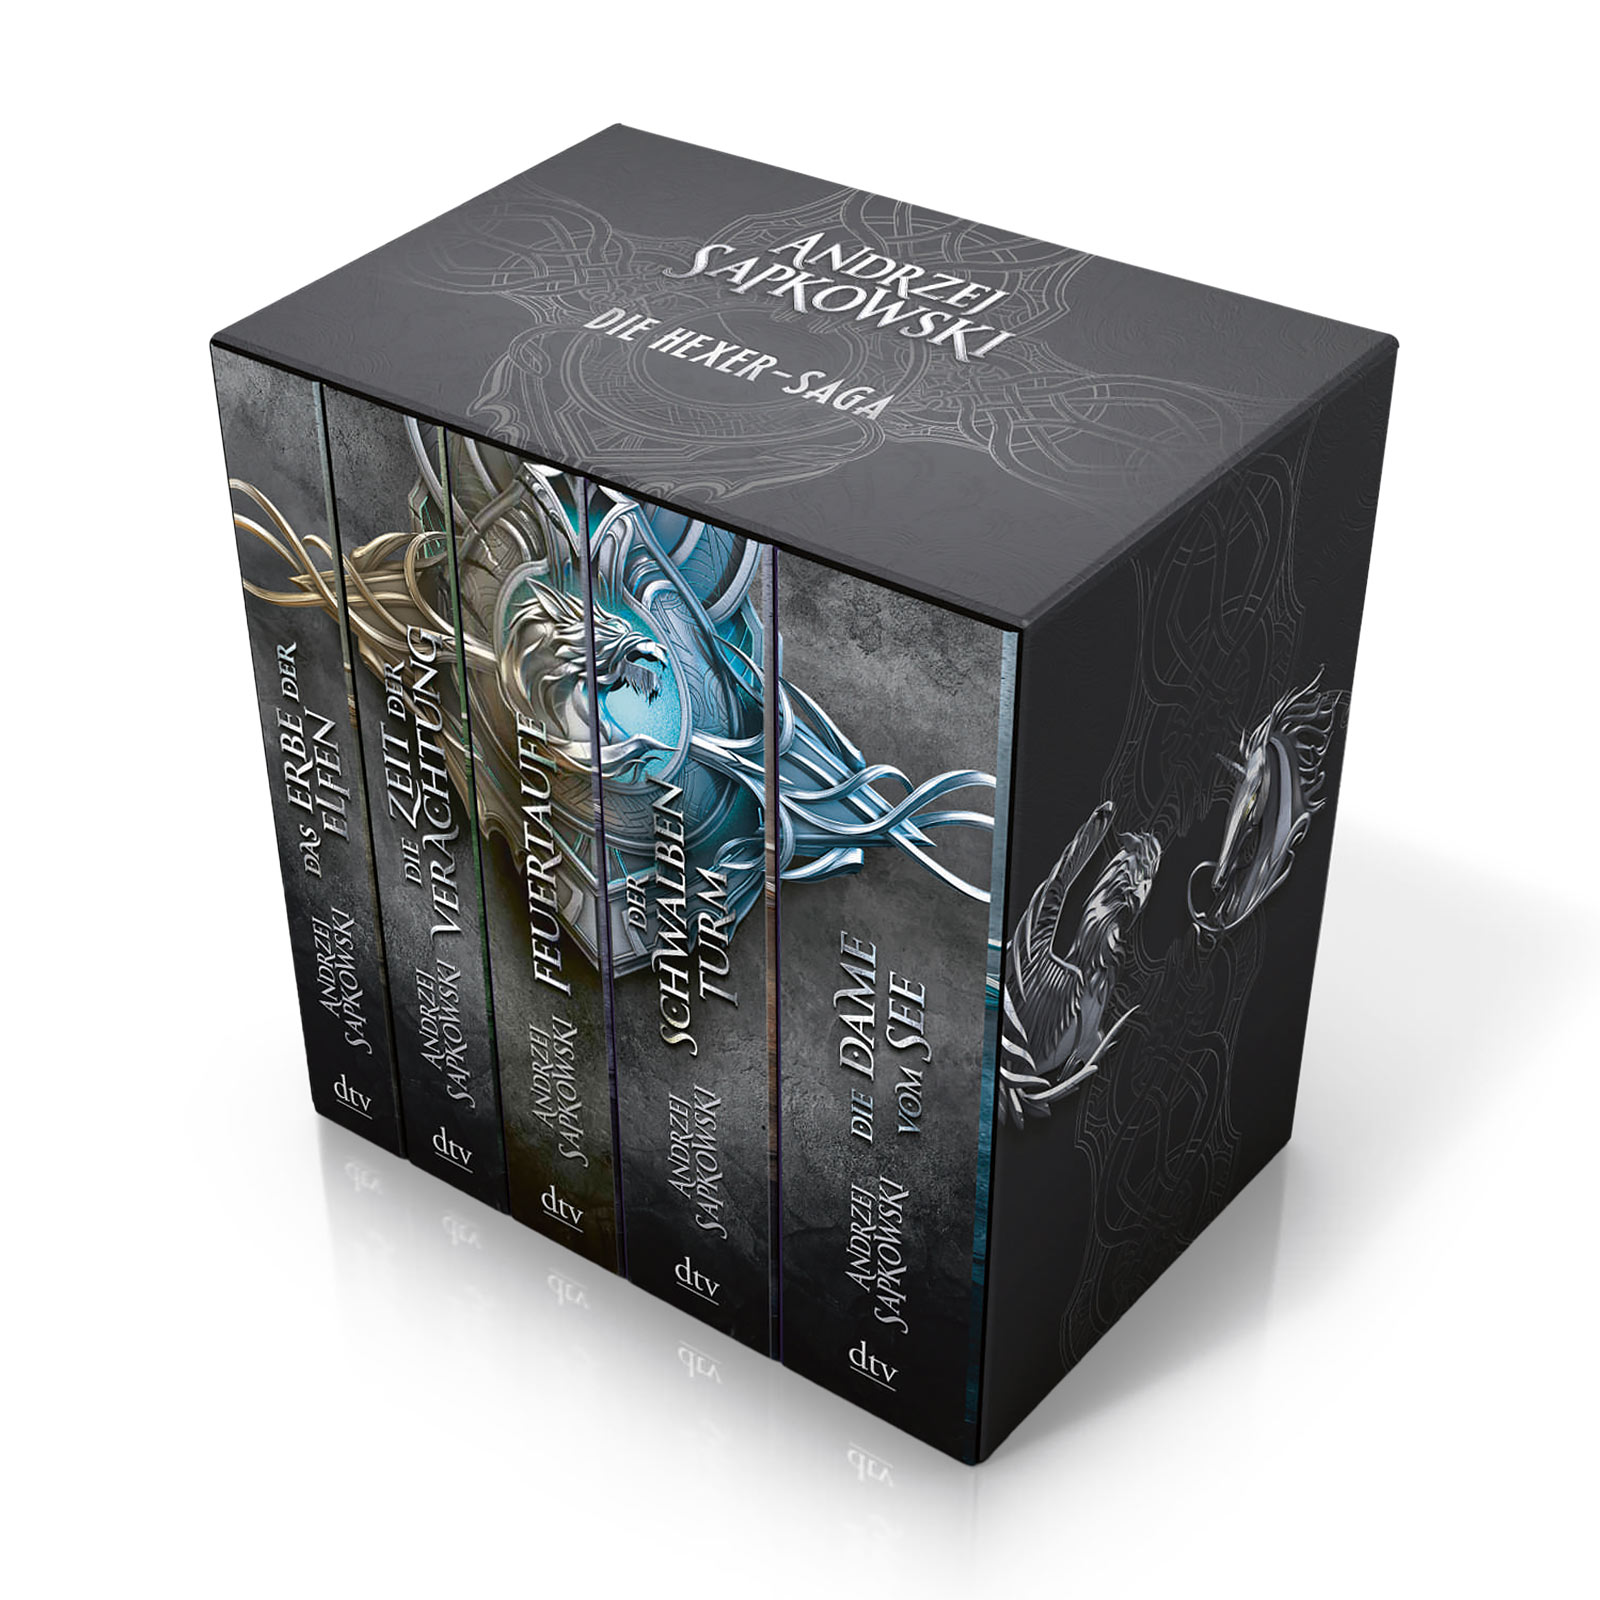 De 5 delen van de Witcher Saga in een box